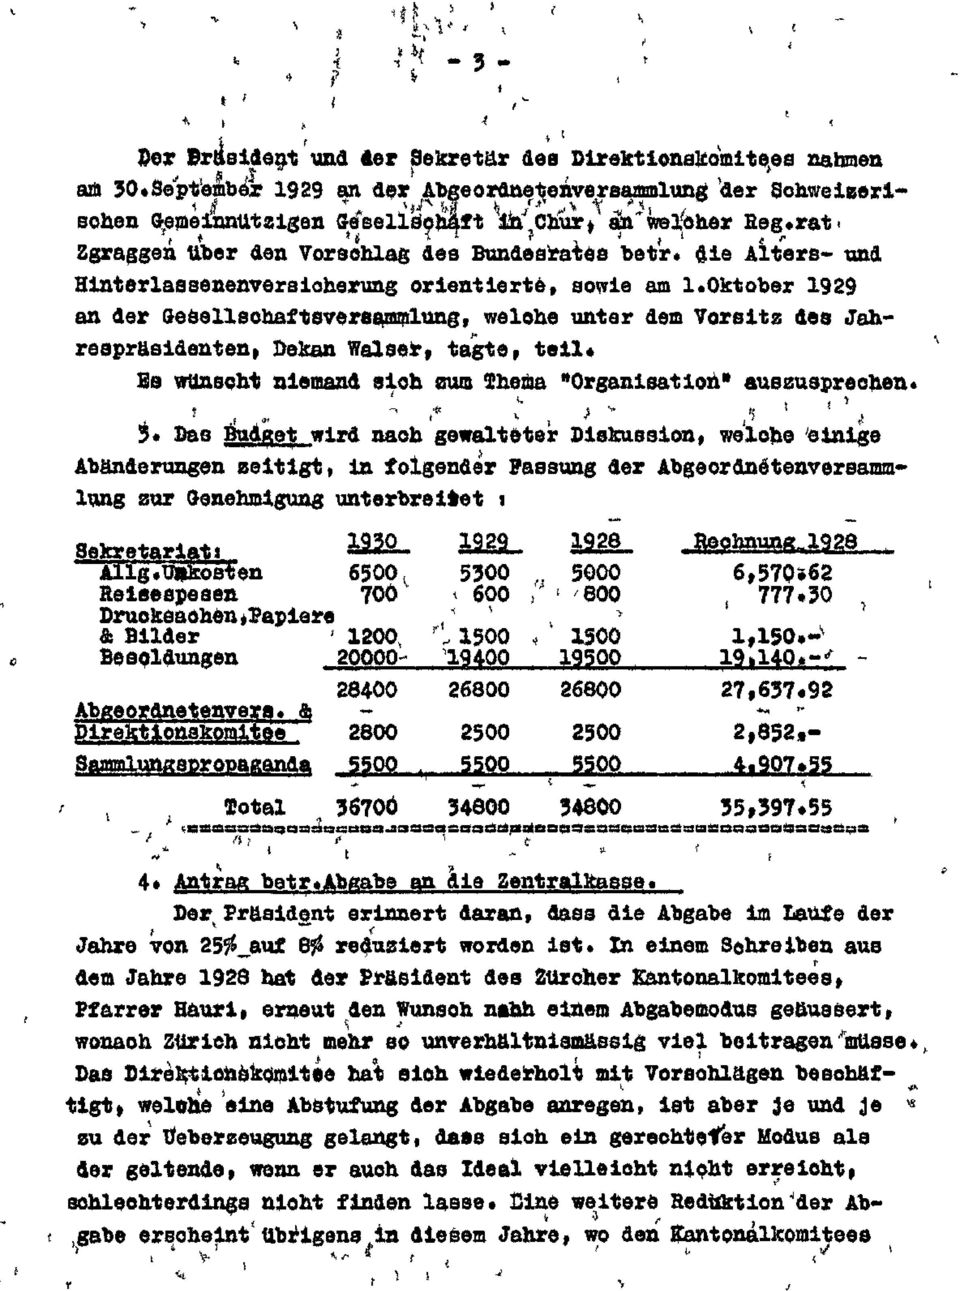 Oktober 1929 an der Gesellsohaftsvereammlung, welohe unter dem Vorsitz des Jahreapräsidenteni Dekan Walser, tagte, teil* Es wünscht niemand sich sum Thema "Organisation" auszusprechen 5* Das Budget